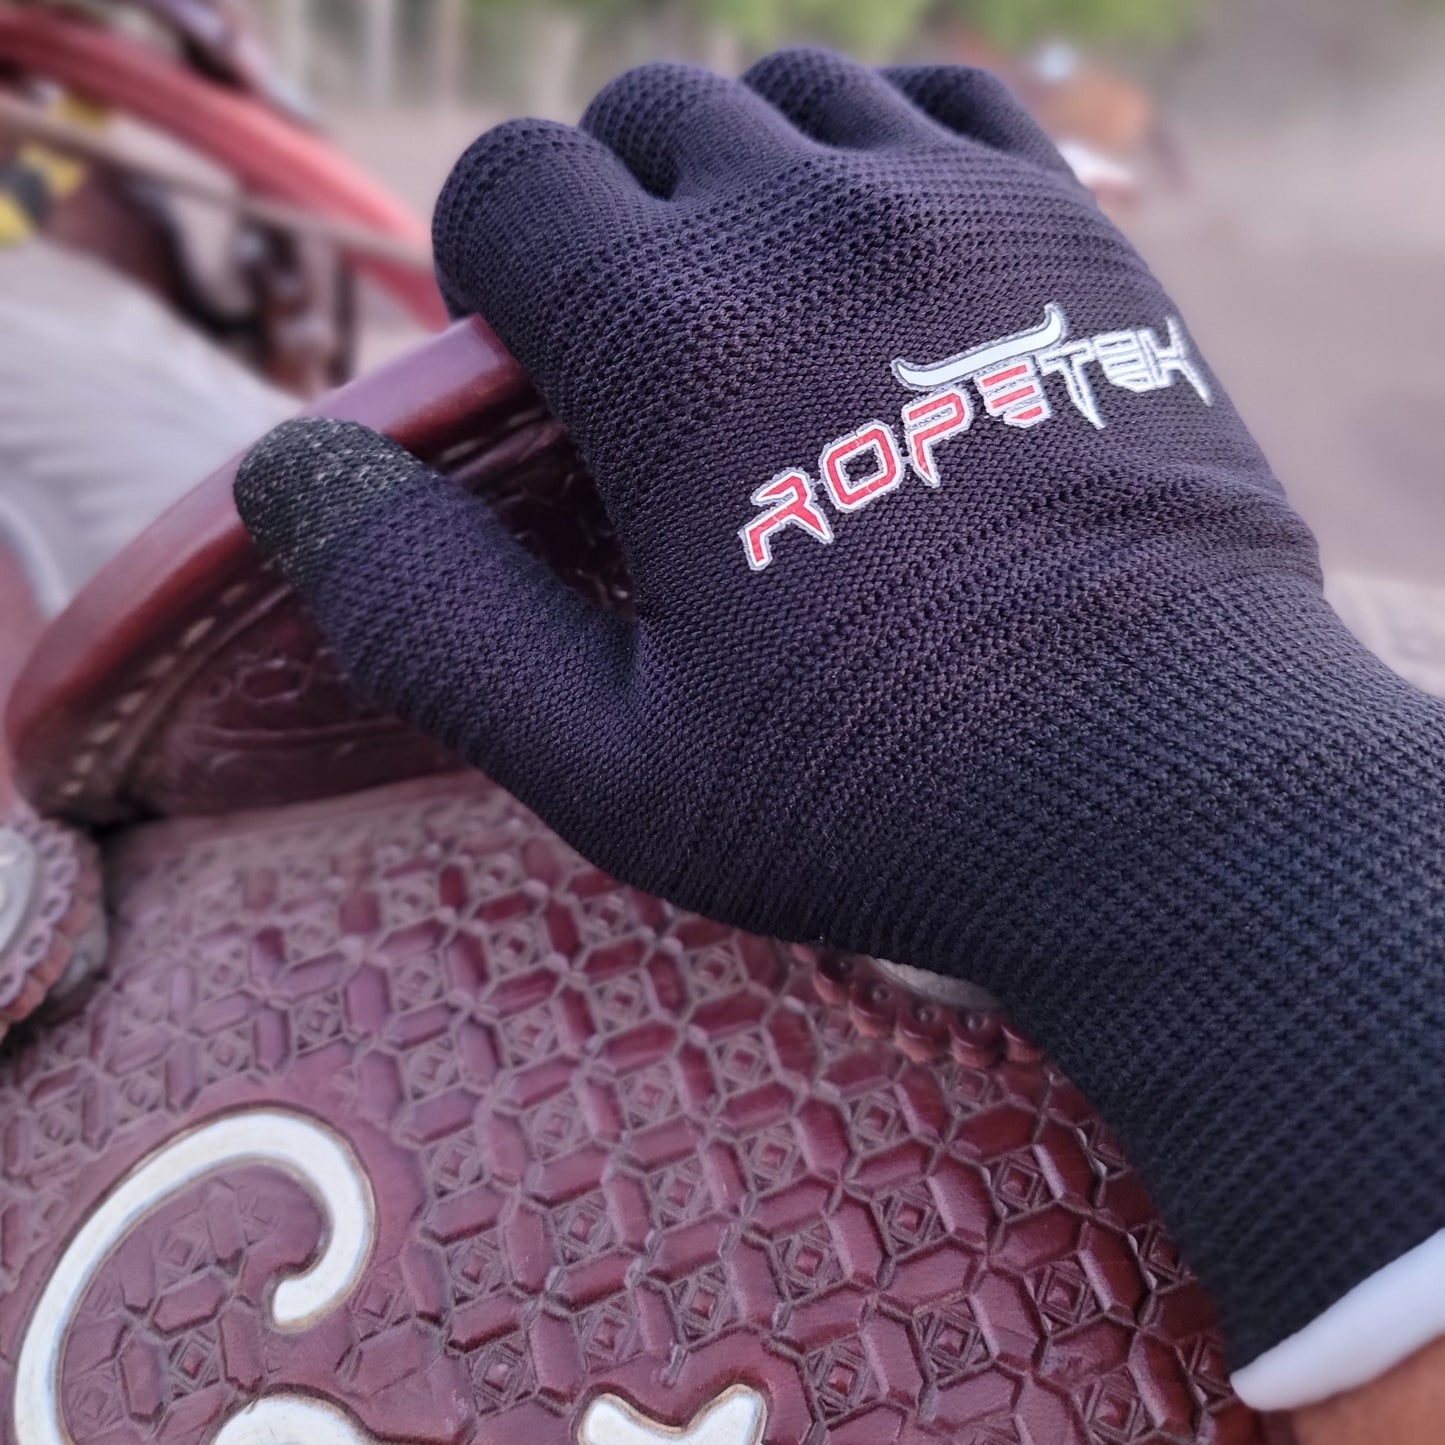 RopeTek Touchscreen Roping Glove- Single